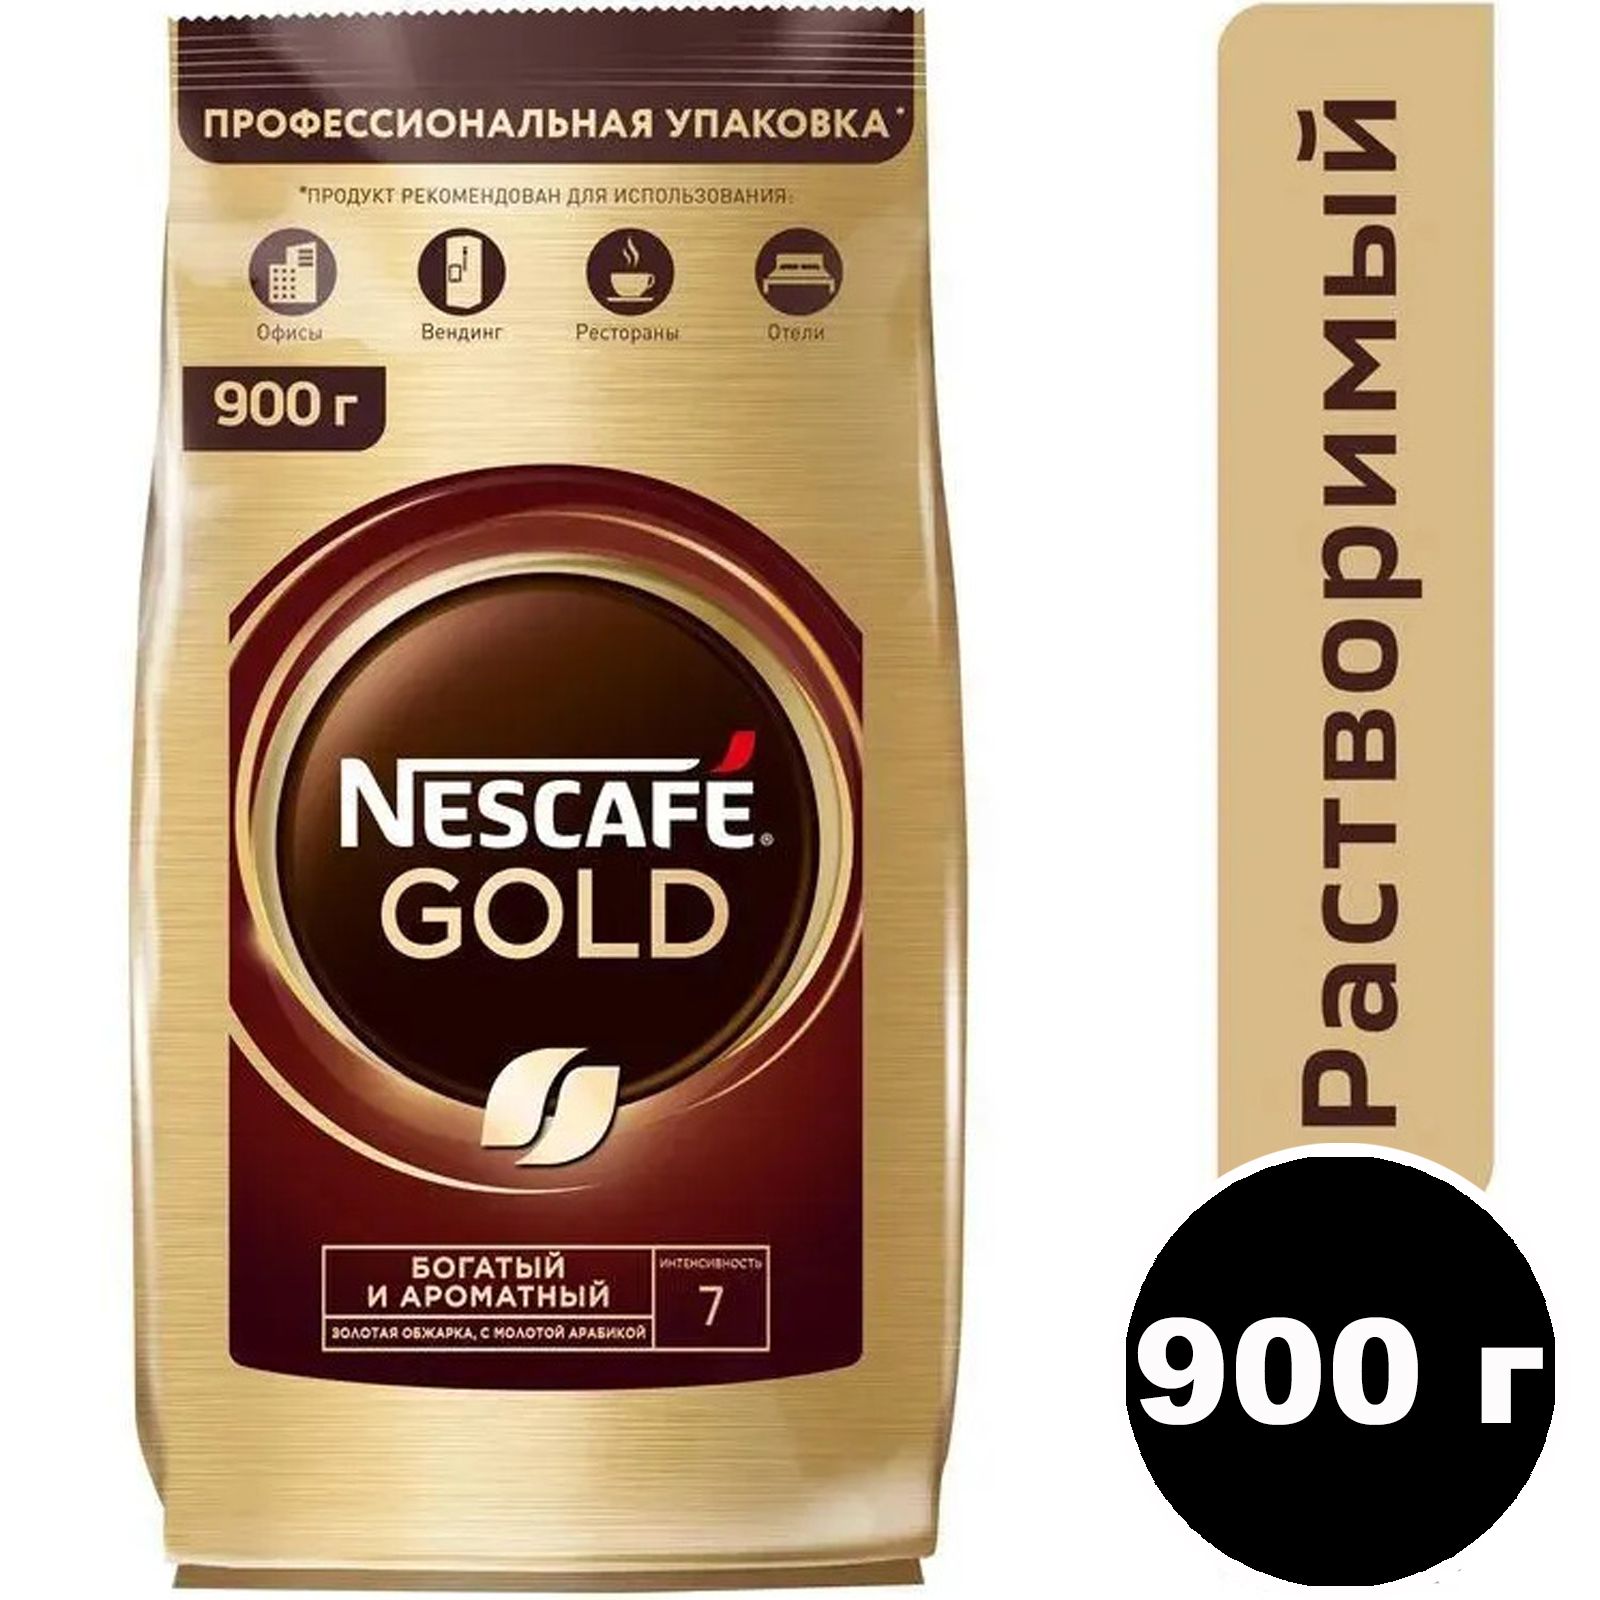 Nescafe gold сублимированный. Nescafe кофе Gold 900г.. Нескафе Голд 750 гр. Кофе Нескафе Голд 750 гр. Кофе растворимый Нескафе Голд 900 гр.